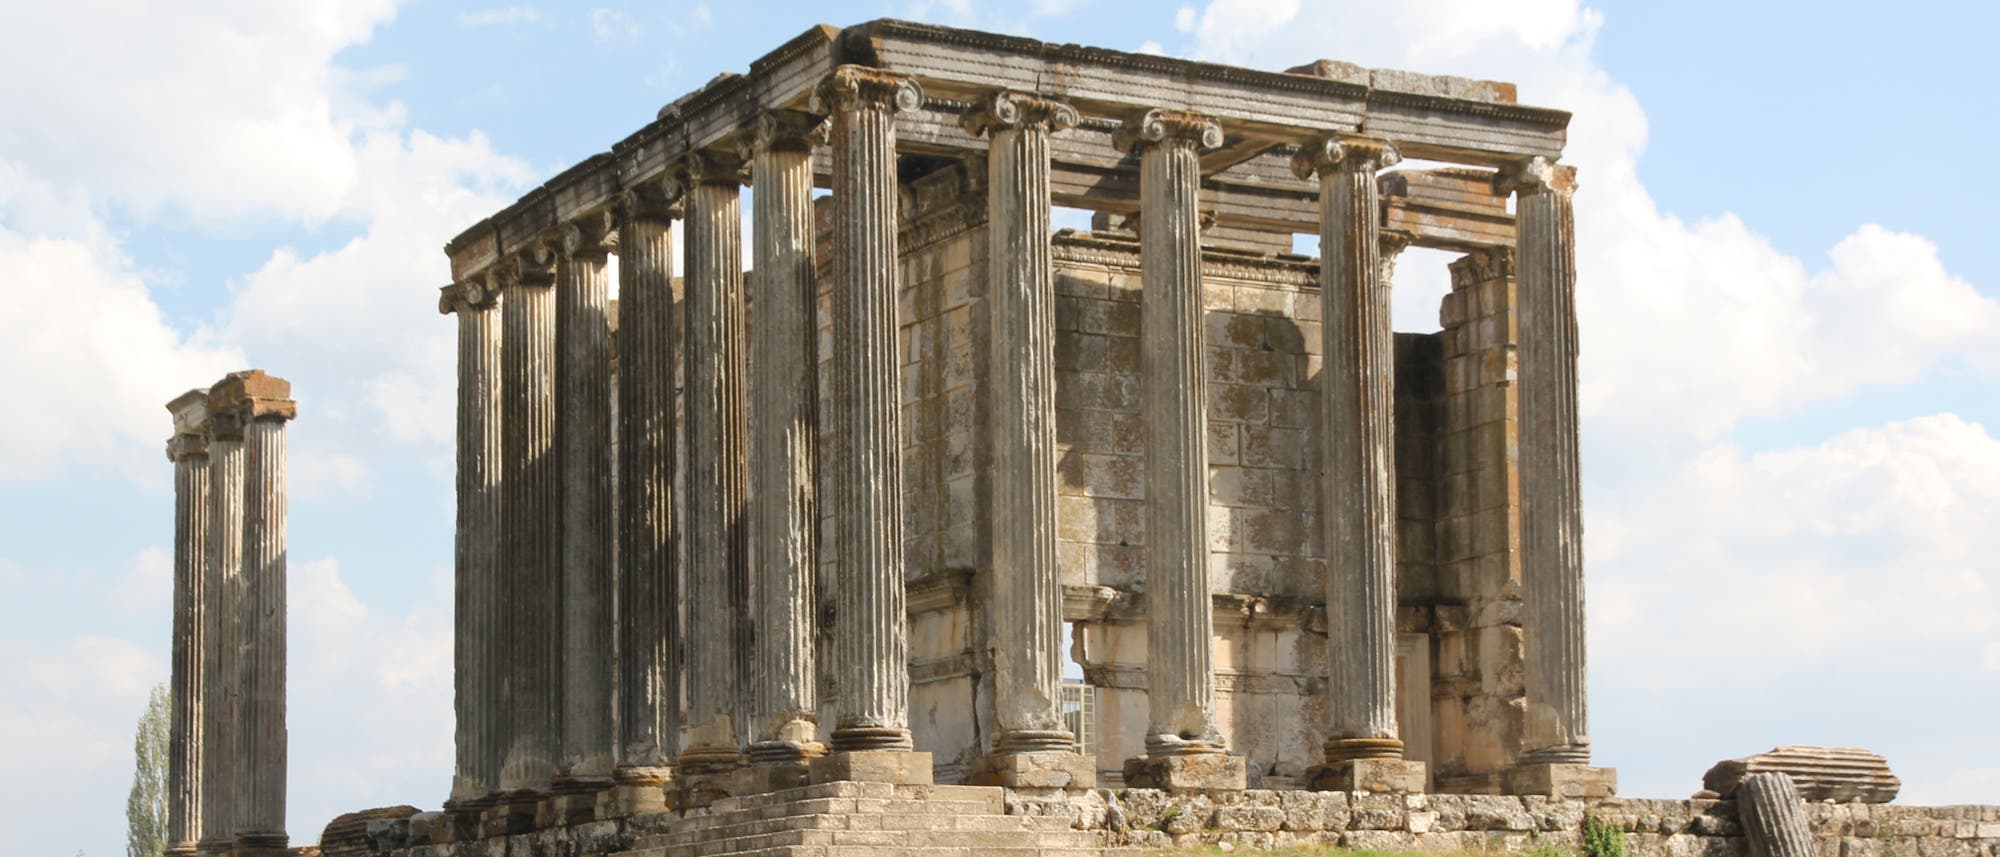 Zeus war der Stadtgott von Aizanoi in der heutigen Türkei. Sein Tempel zeugt vom Reichtum der Gemeinschaft in der römischen Kaiserzeit.